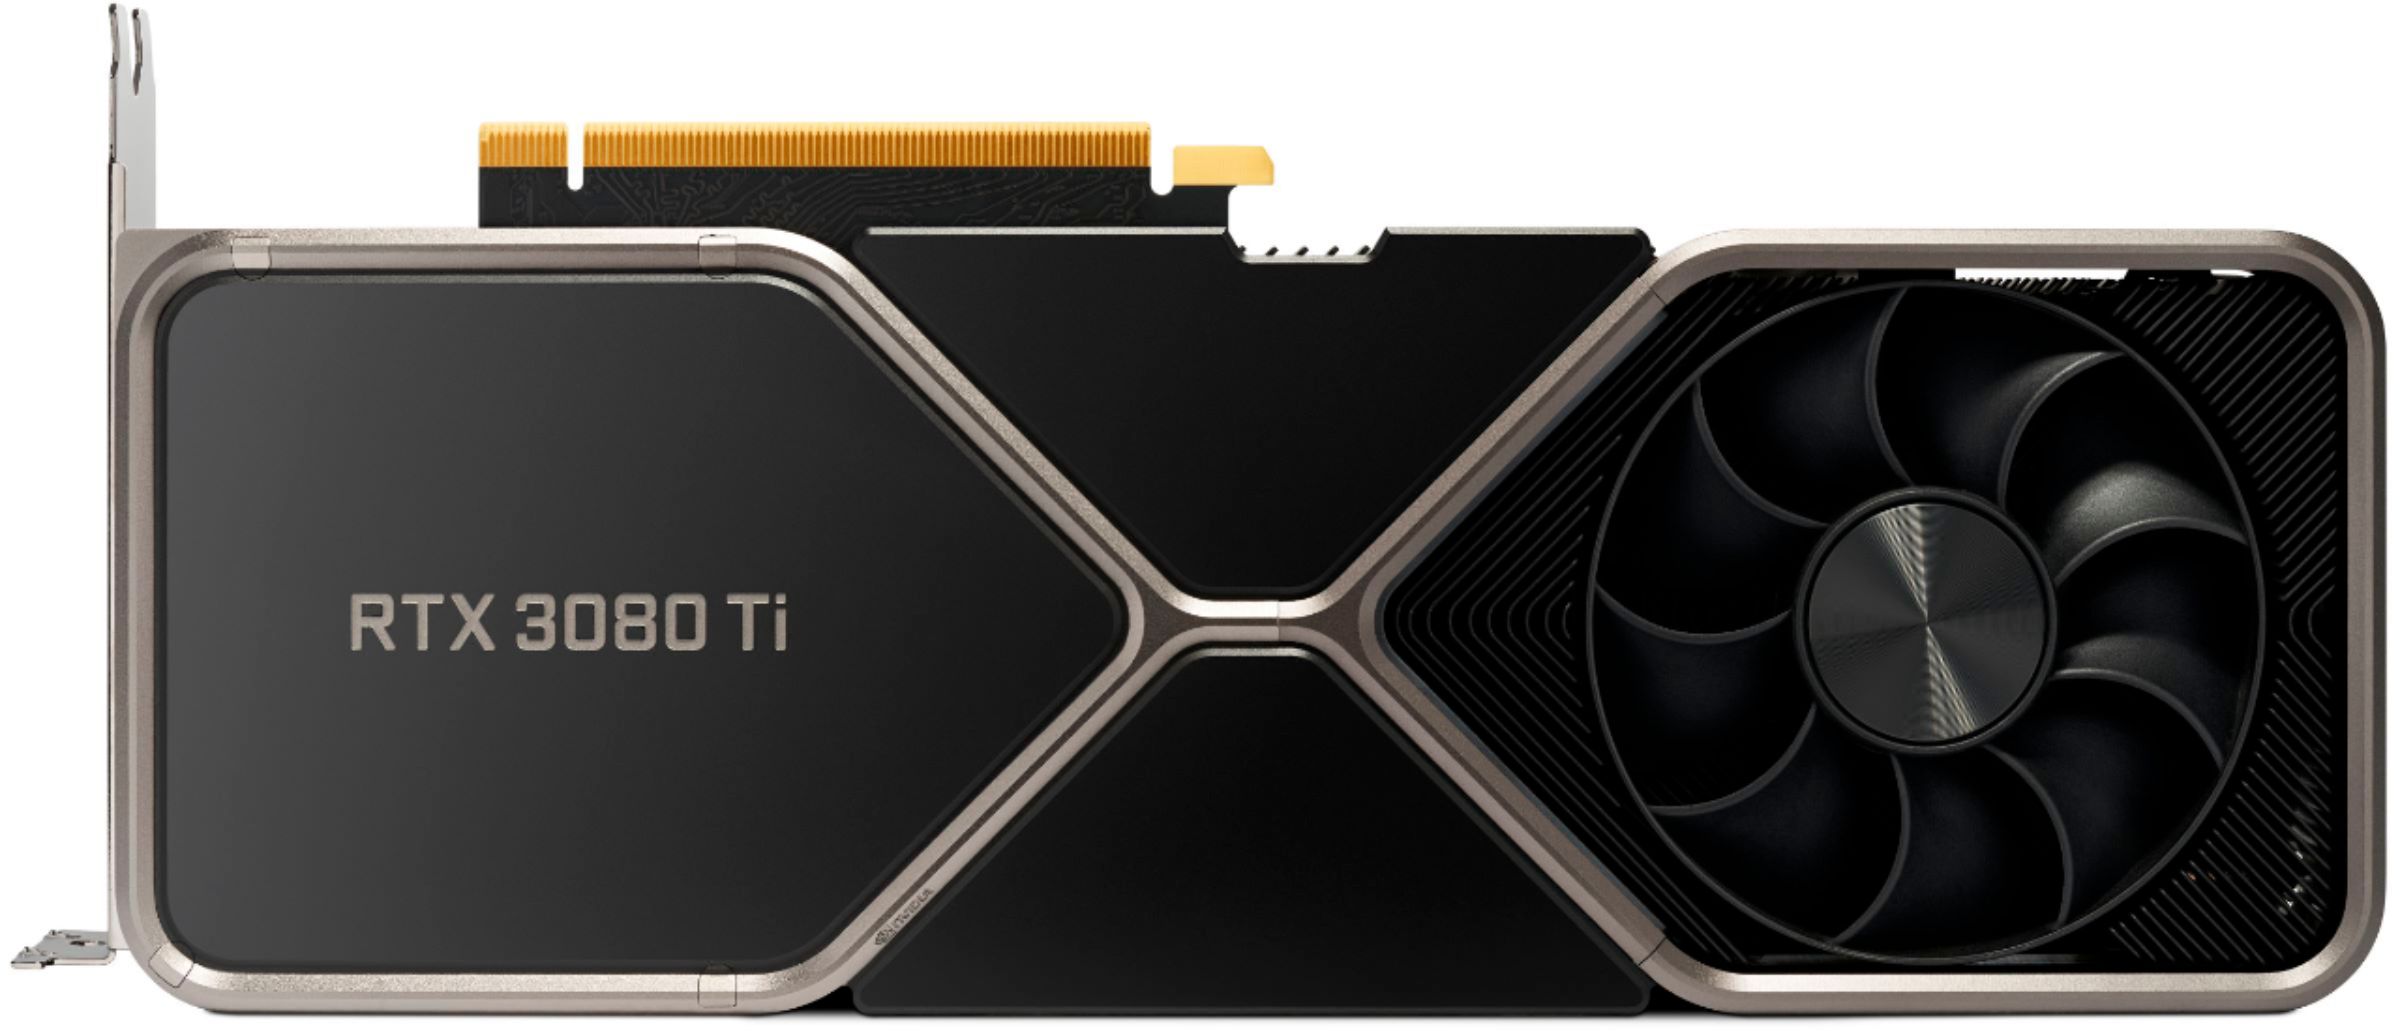 Phiên bản GPU RTX 3080 Ti